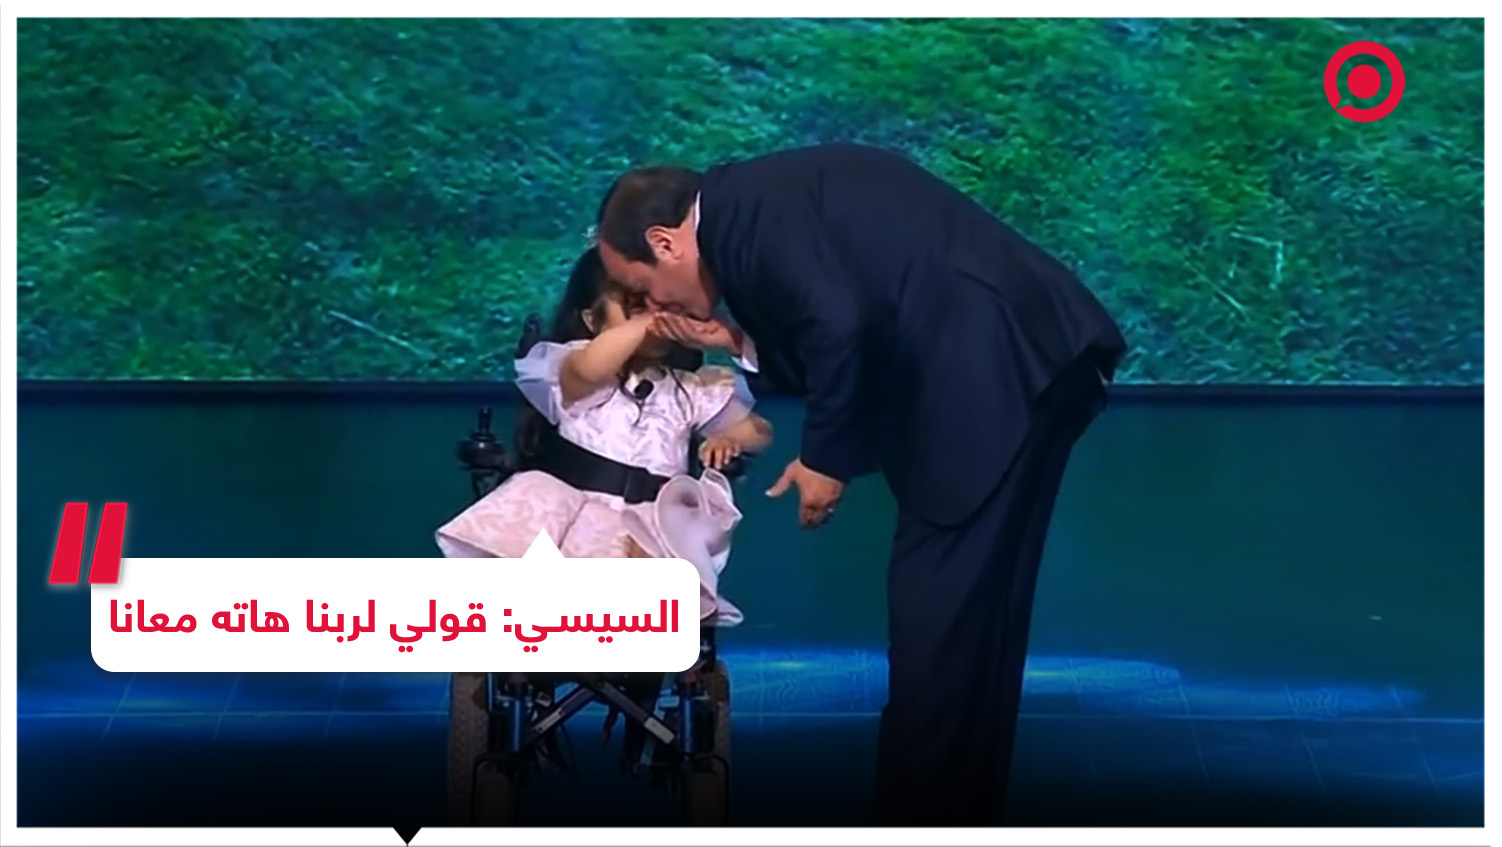 السيسي يتصدر مواقع التواصل بعد كلمات وجهها لفتاة على كرسي المقعدين